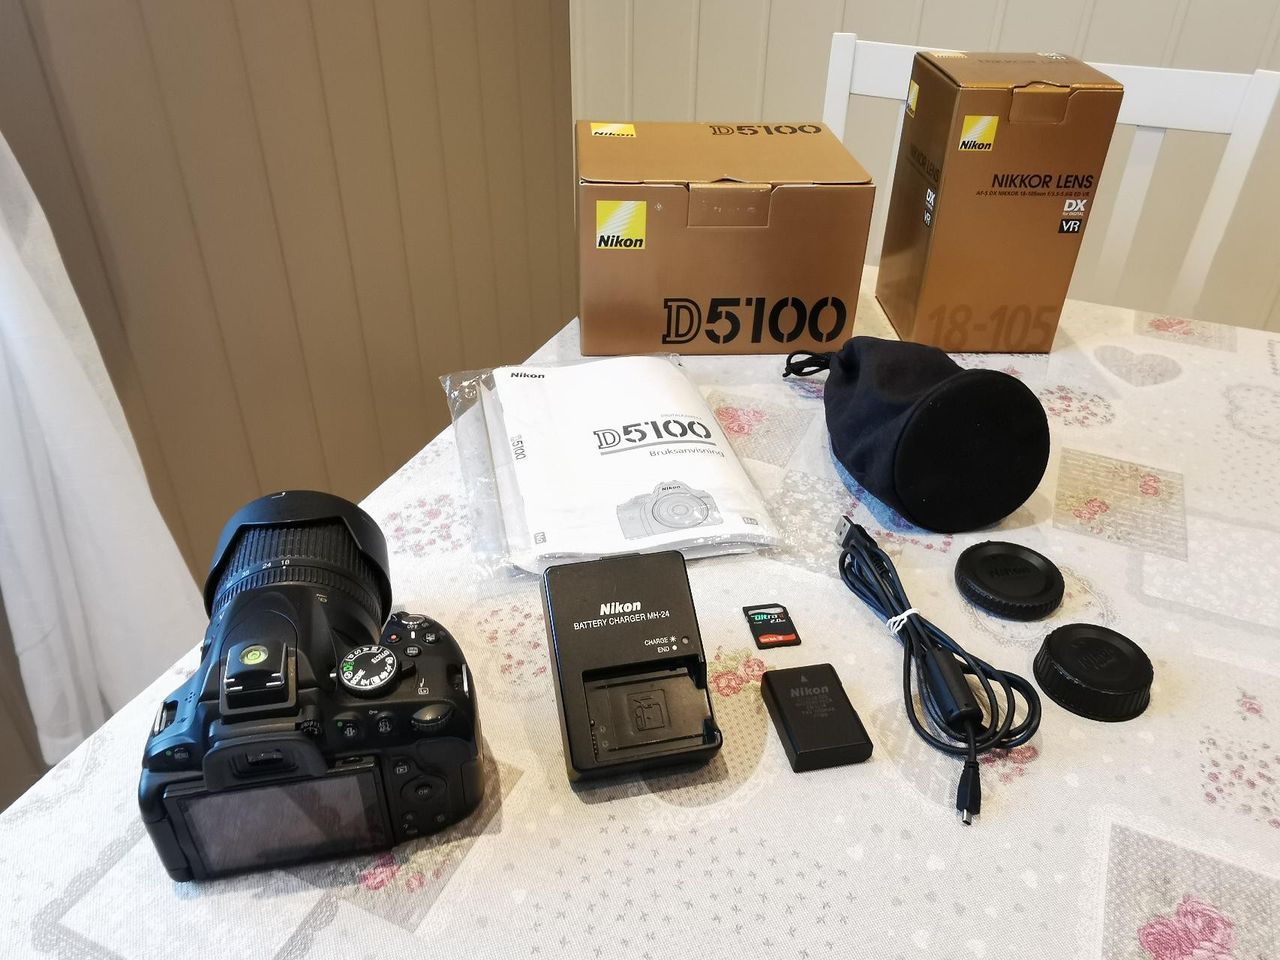 Nikon D5100 / 18-105 VR Kit | FINN torget